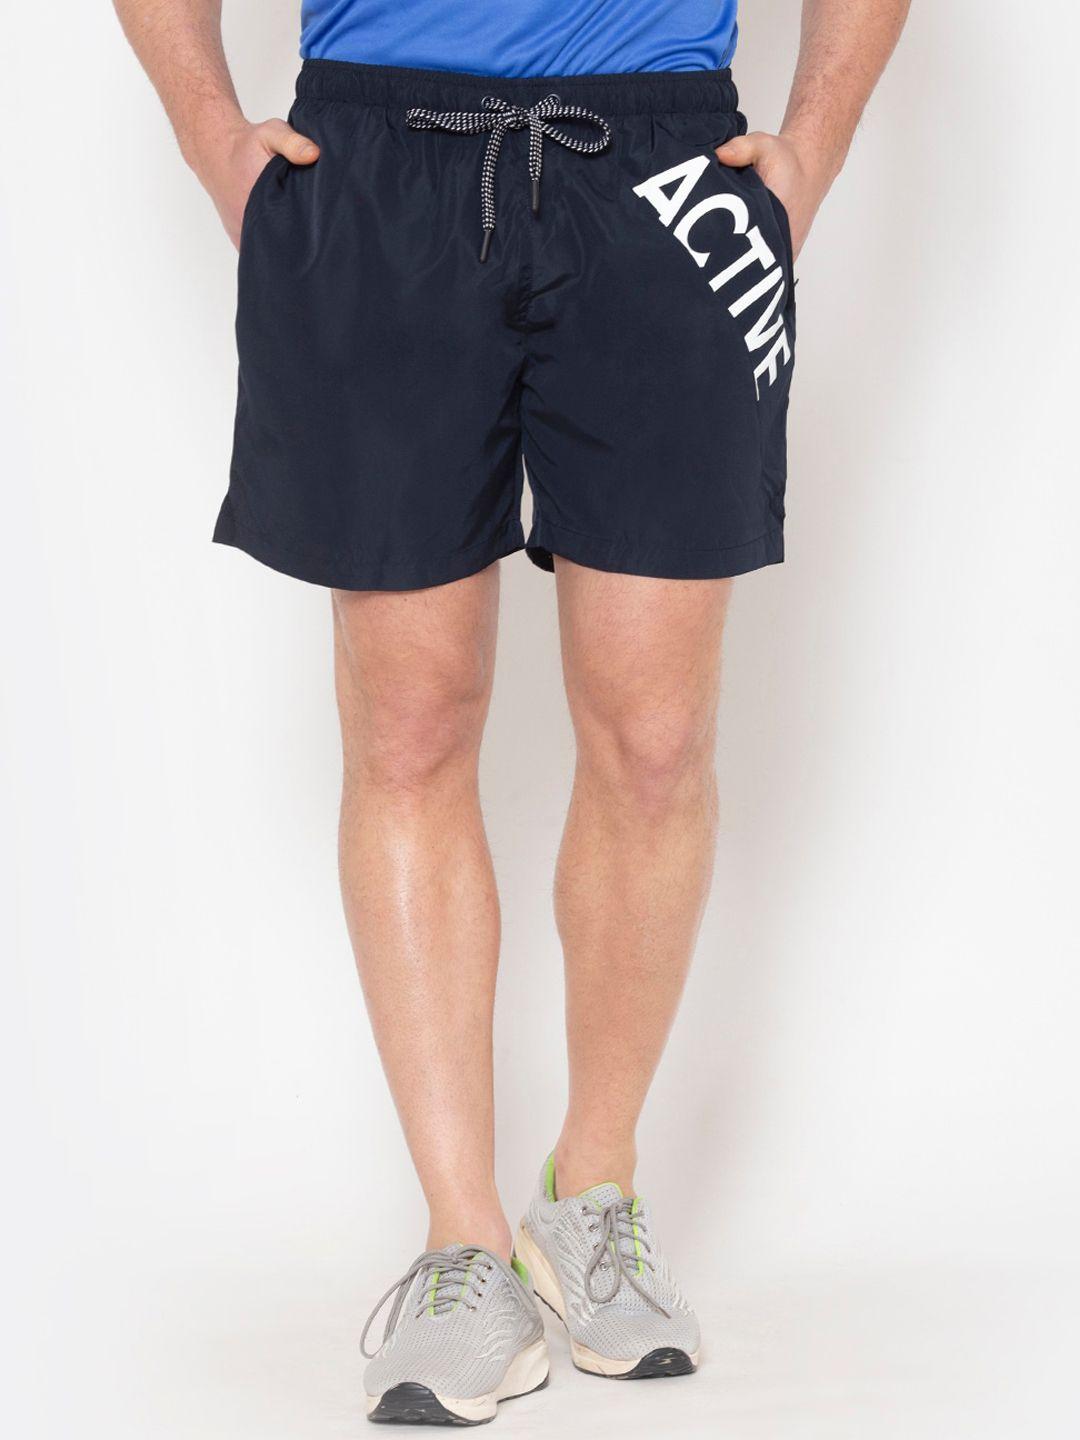 bodyactive men navy blue & white printed shorts